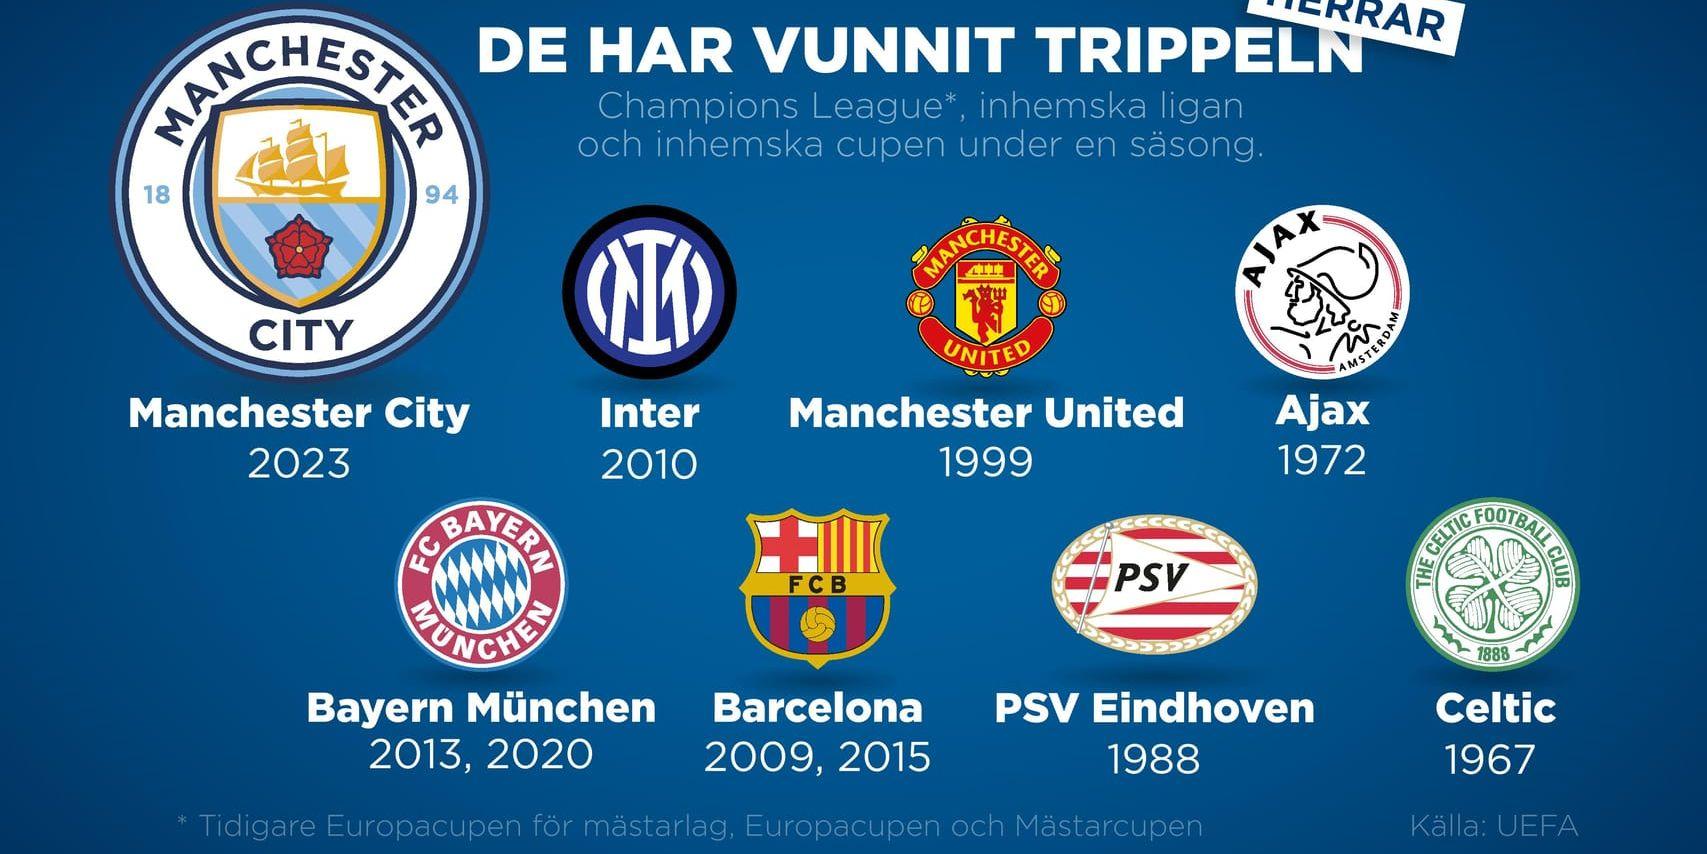 Alla klubbar i Europa som vunnit den inhemska ligan, inhemska cupen och Champions League under samma säsong.